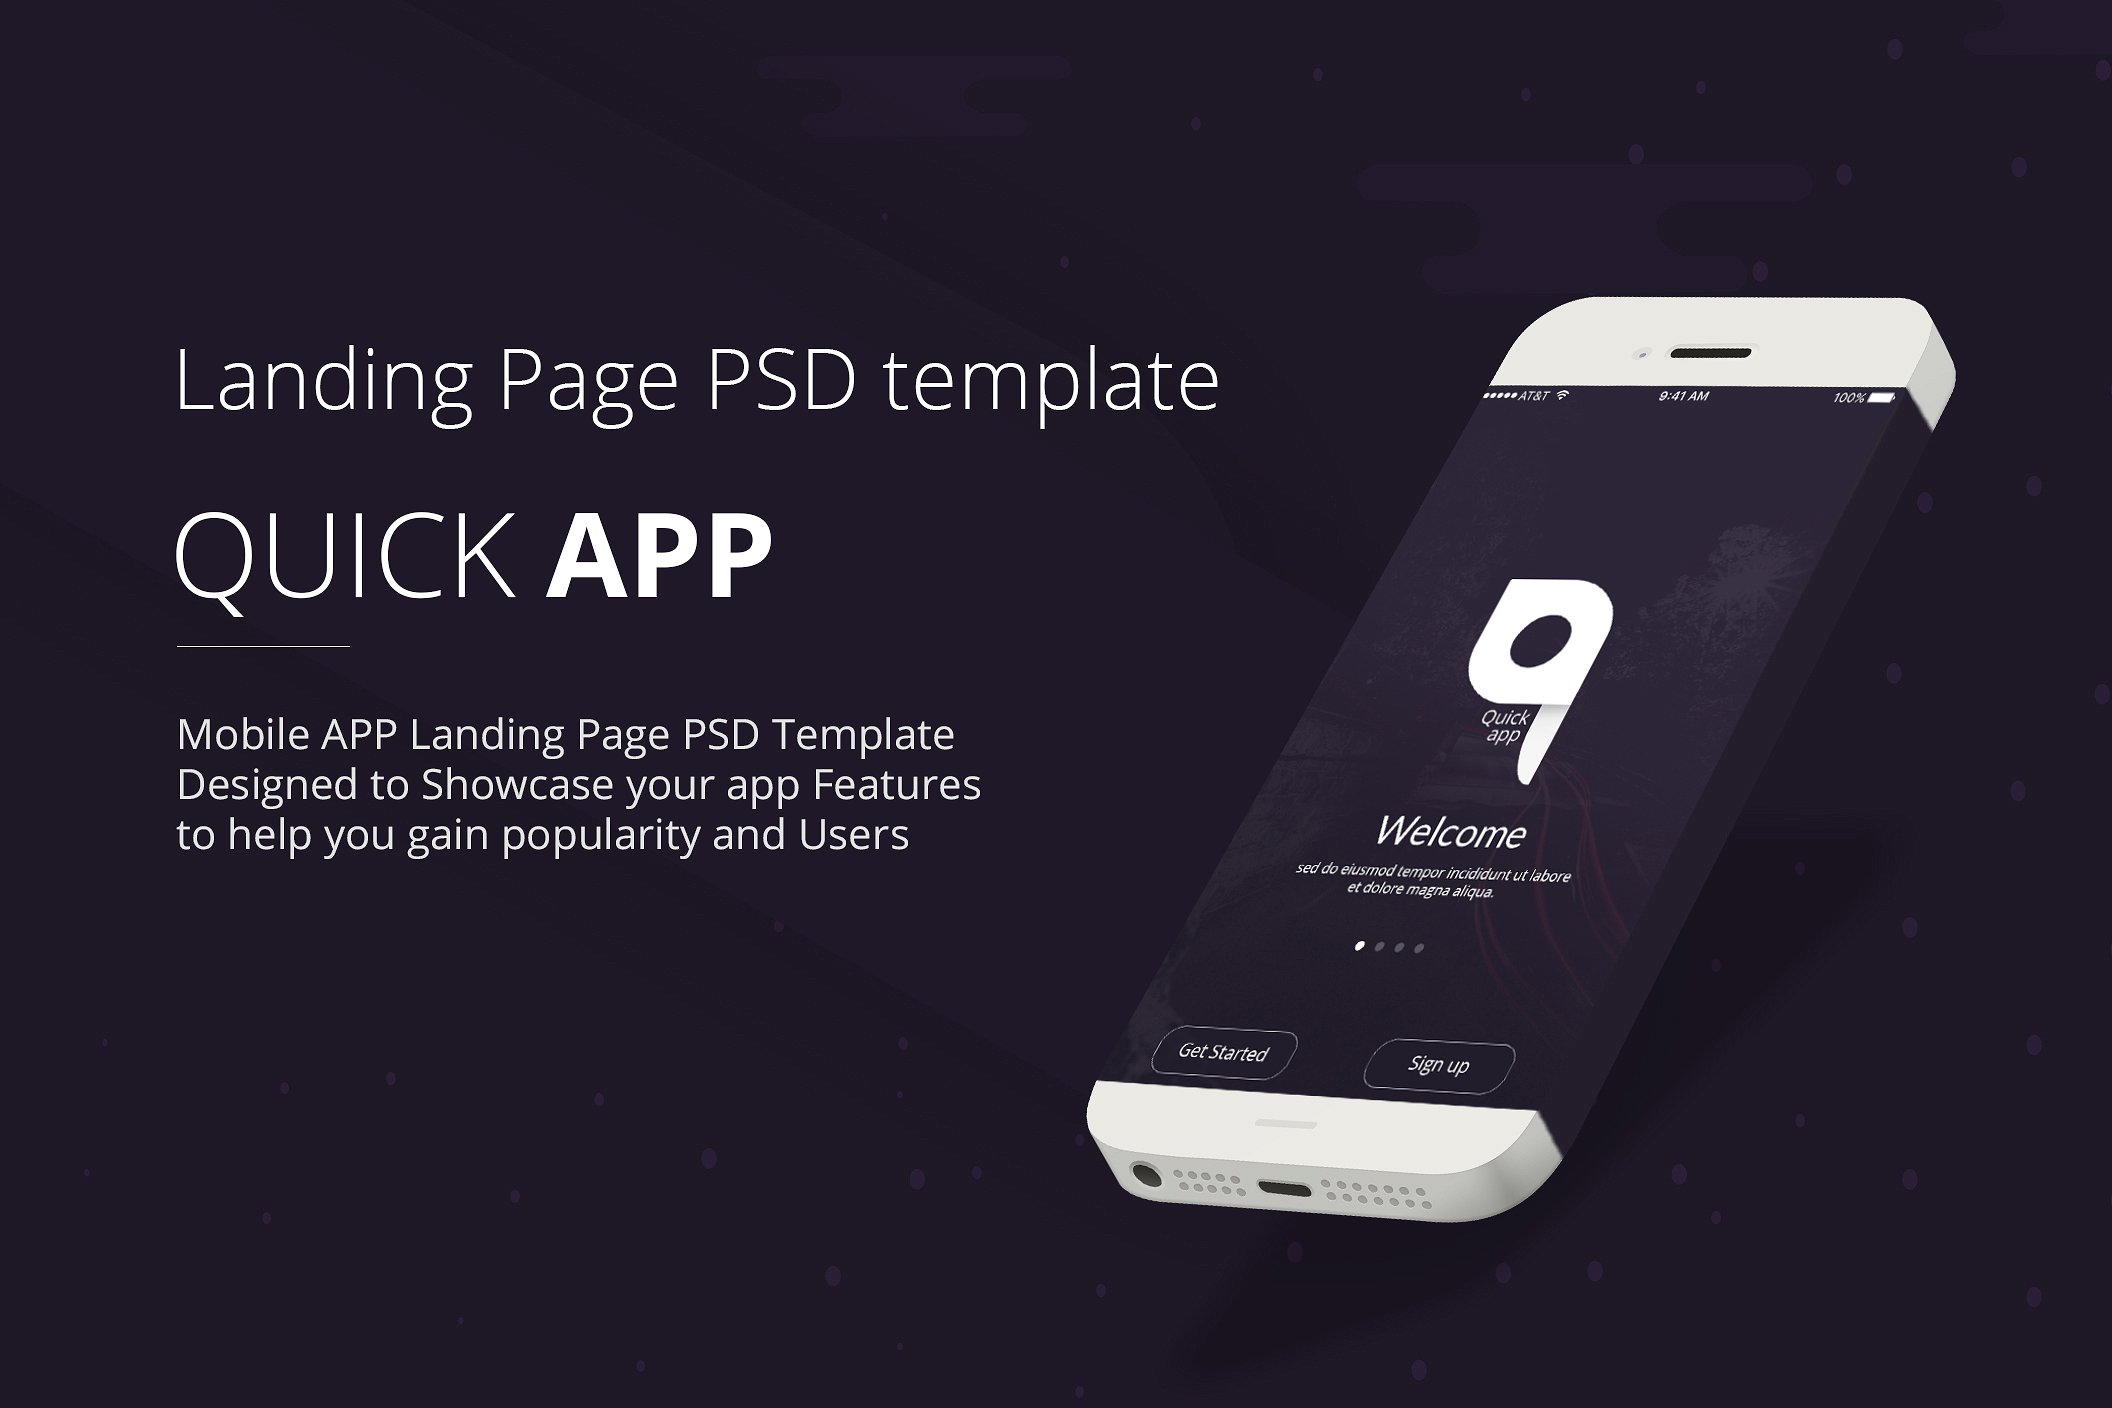 着陆页设计模版 QuickApp – Landing Page PSD Template插图